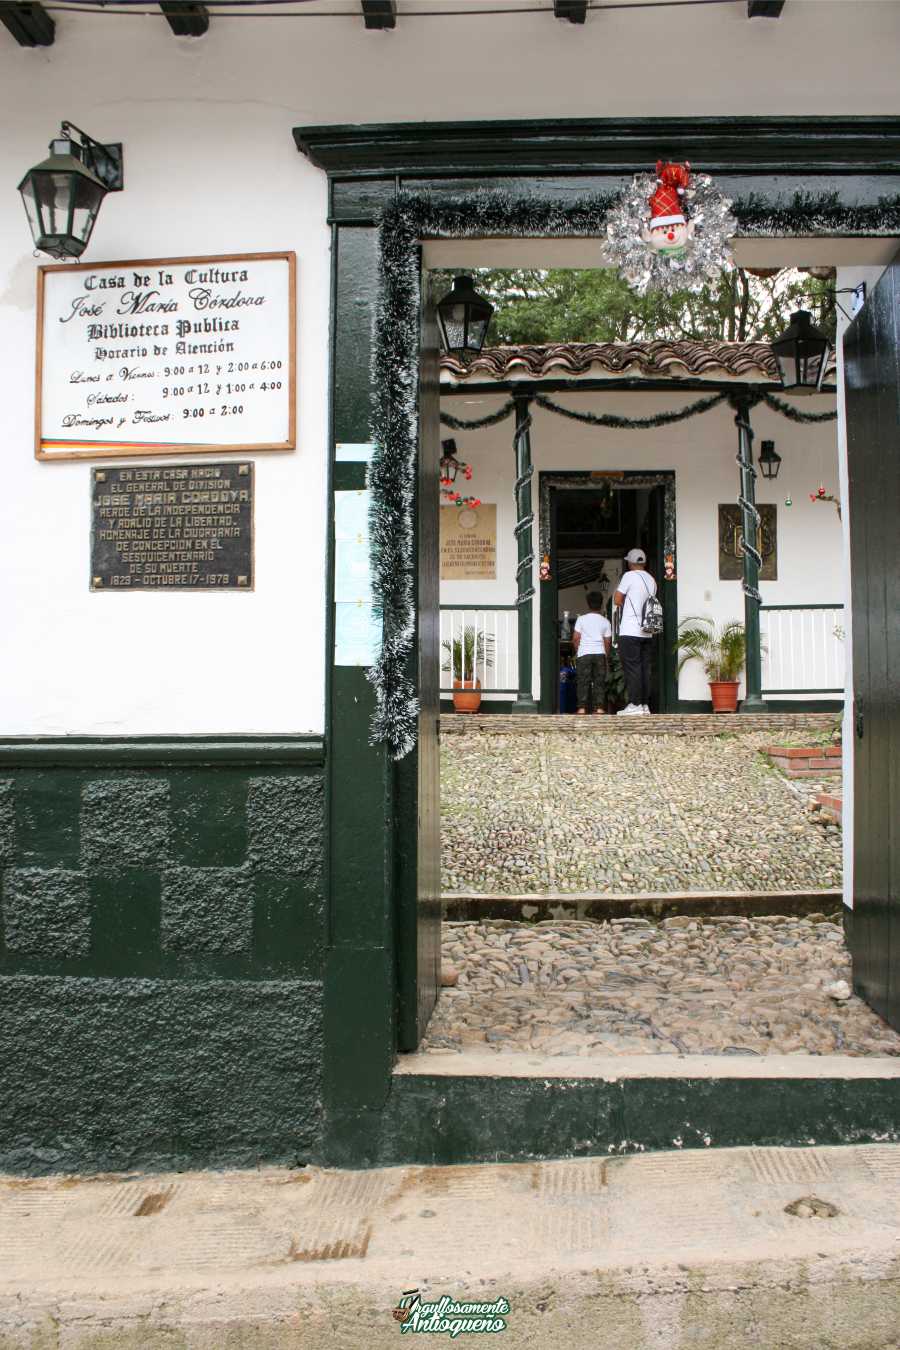 Casa de la cultura Concepción Antioquia